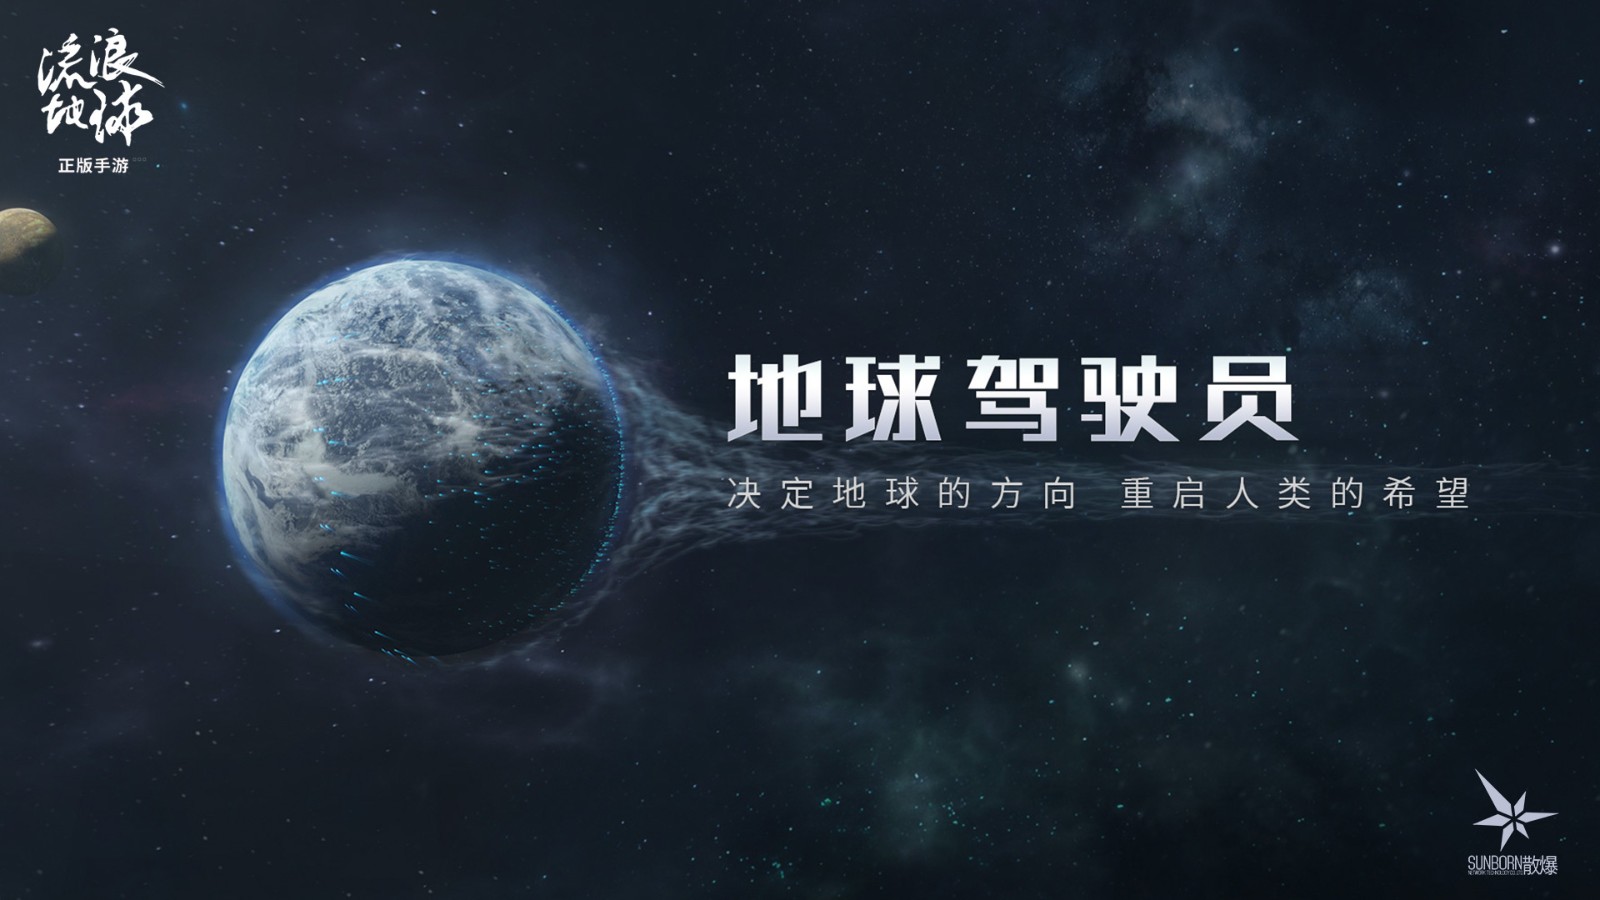 中式硬核科幻策略手游 《流浪地球手游》正式公布 官网预约开启 二次世界 第2张